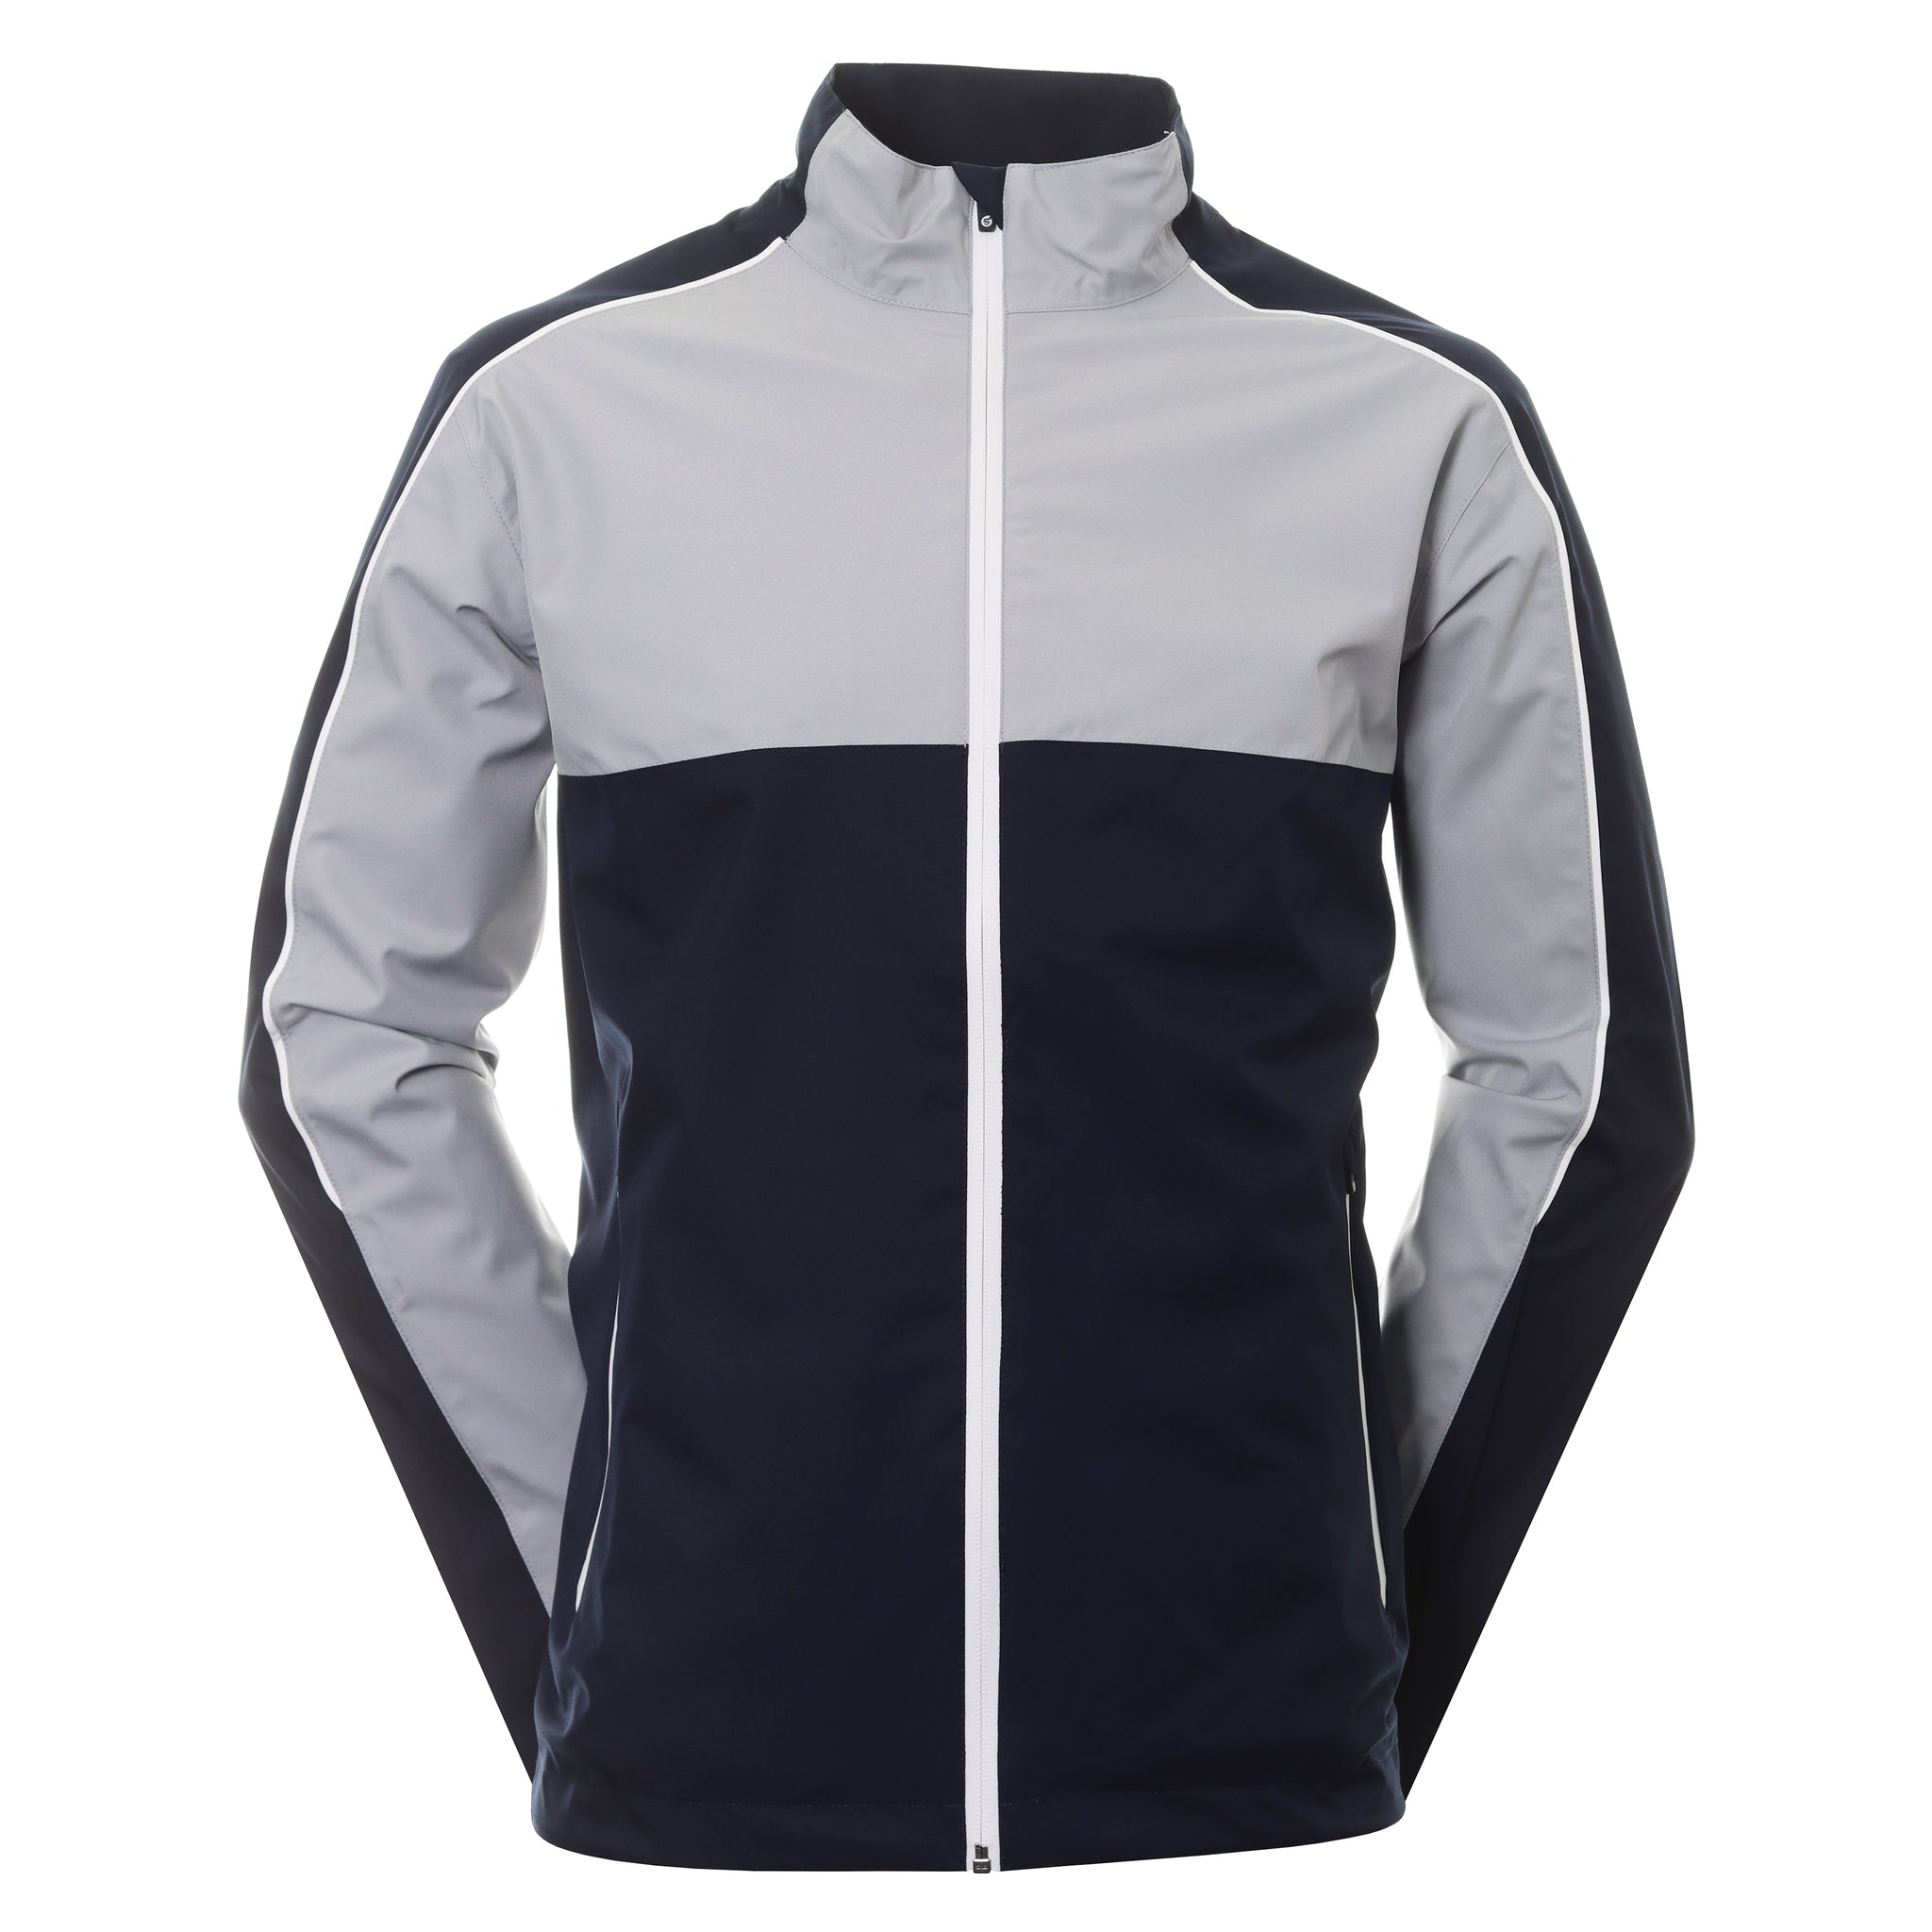 sunderland-golf-matterhorn-waterproof-jacket-sunmr91-mat-navy-silver-white